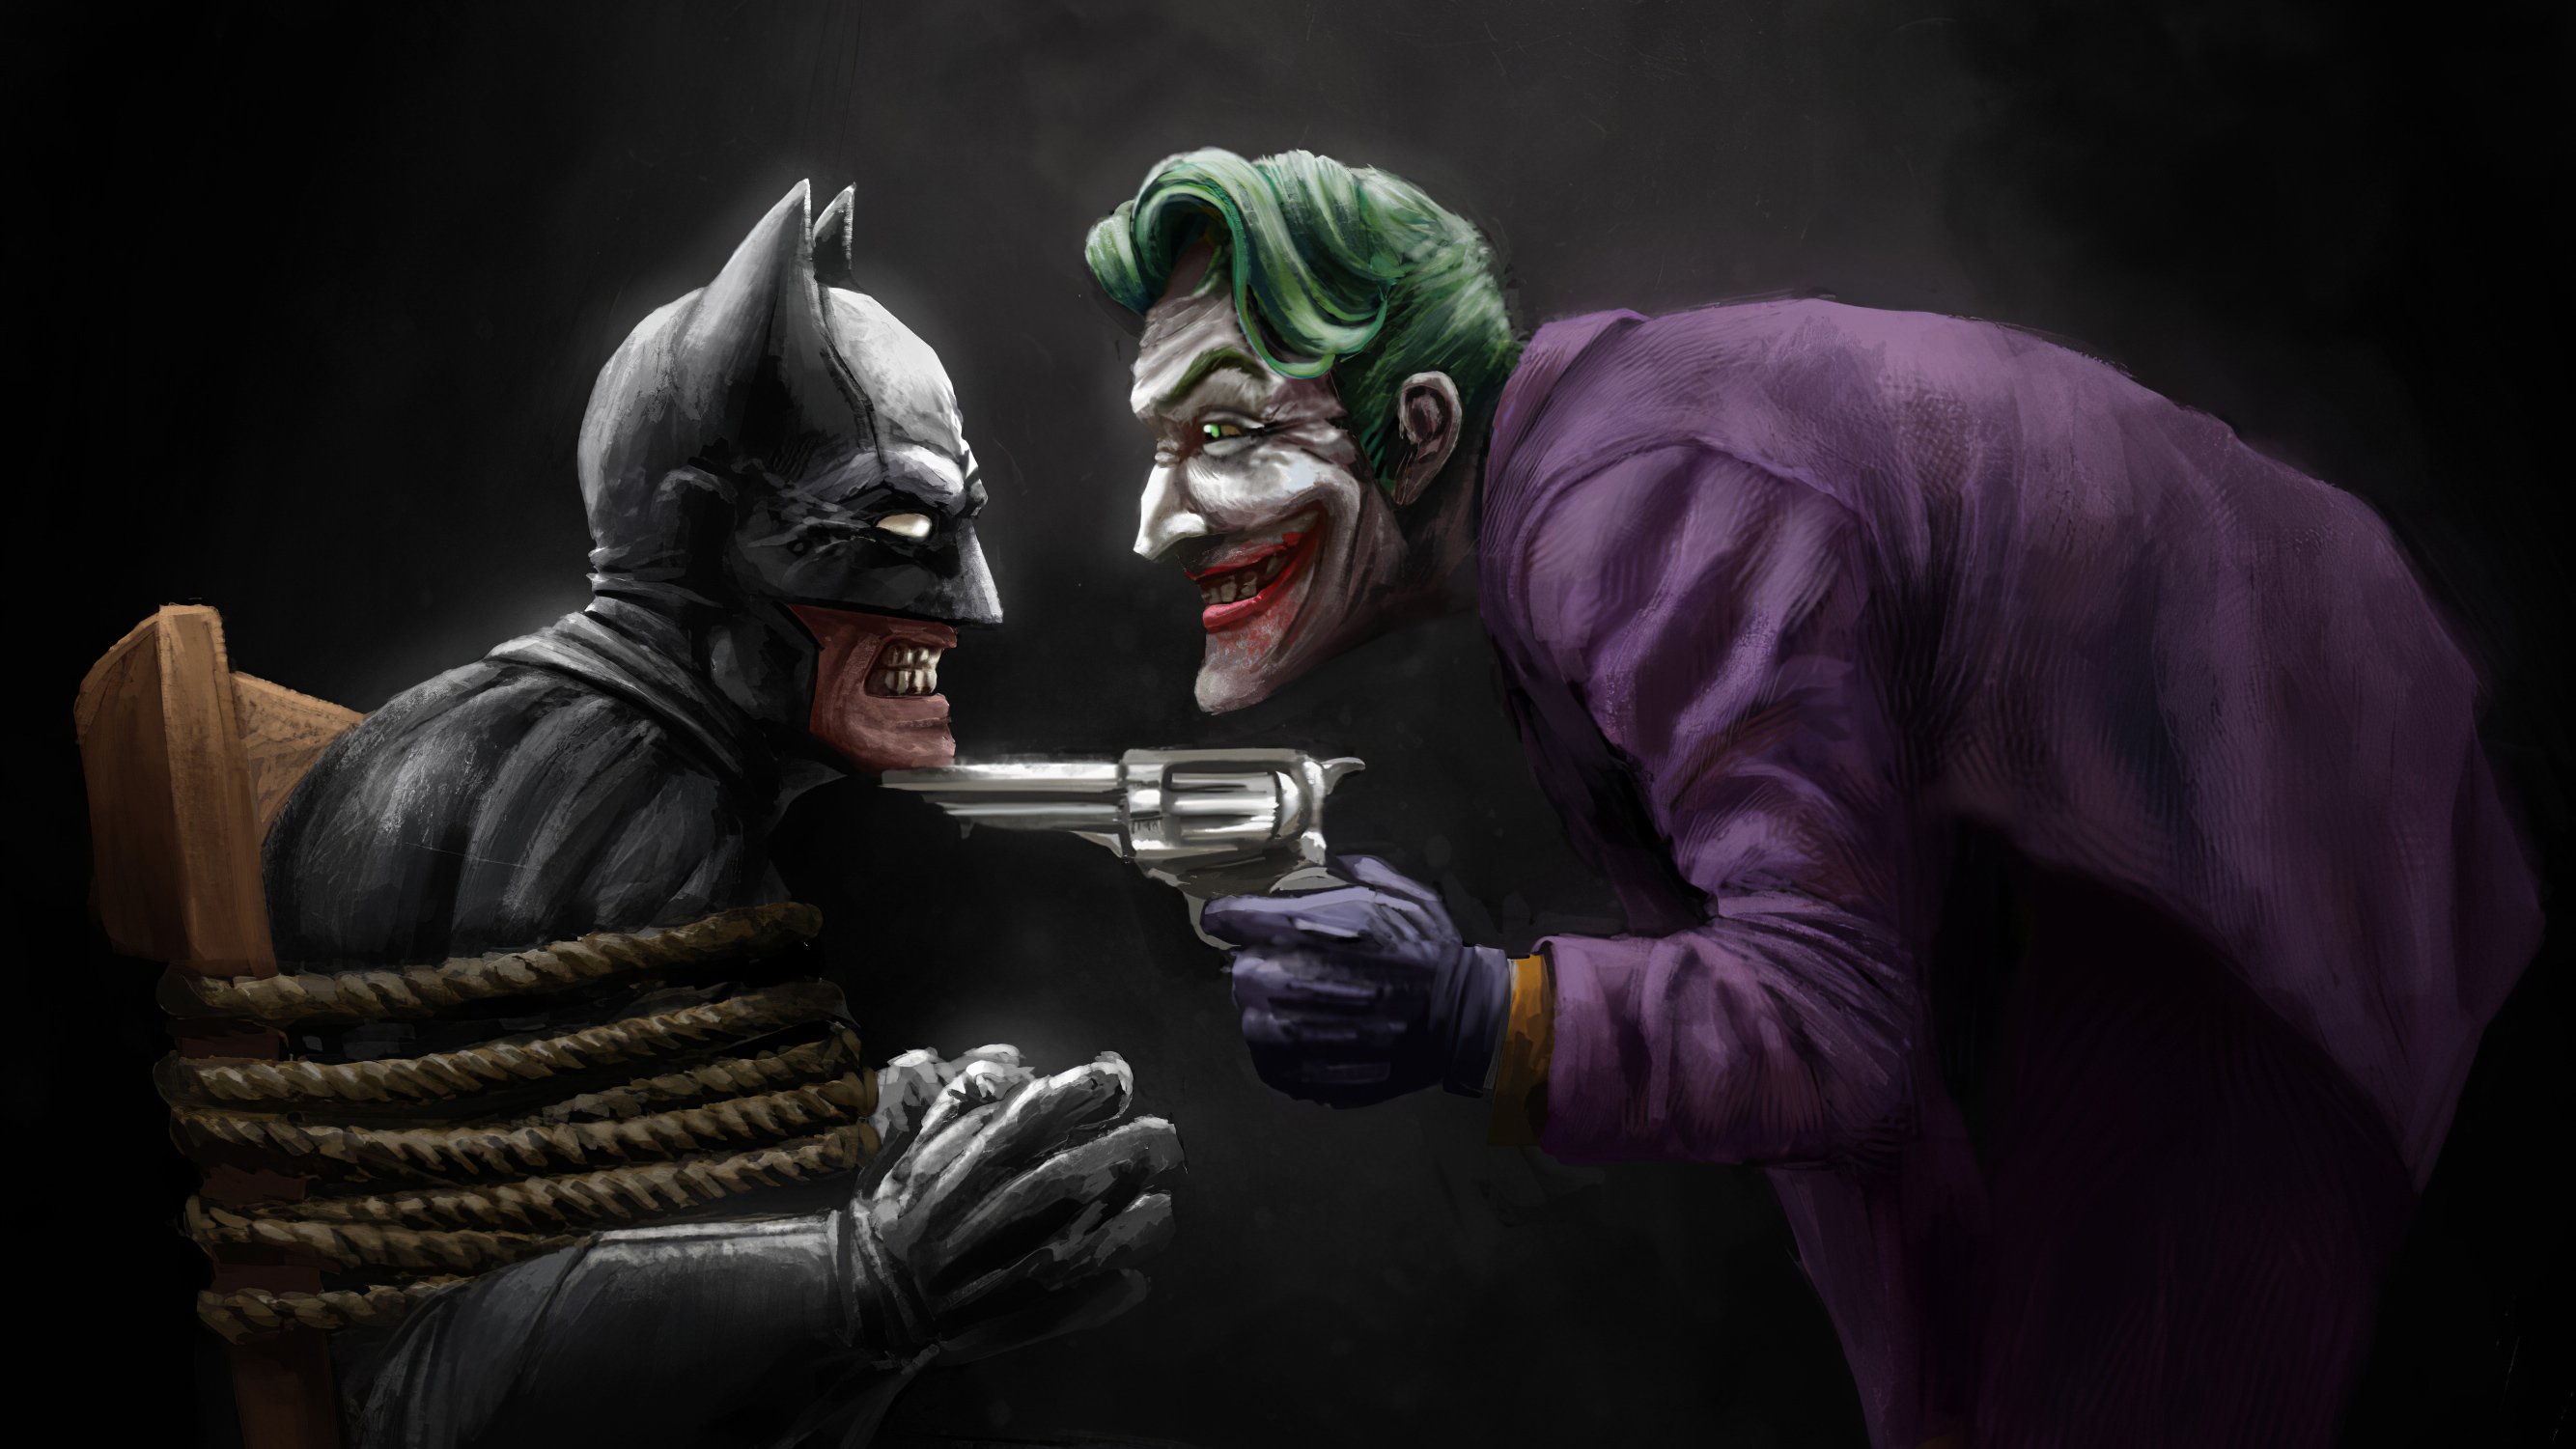 Wallpaper Batman and Joker